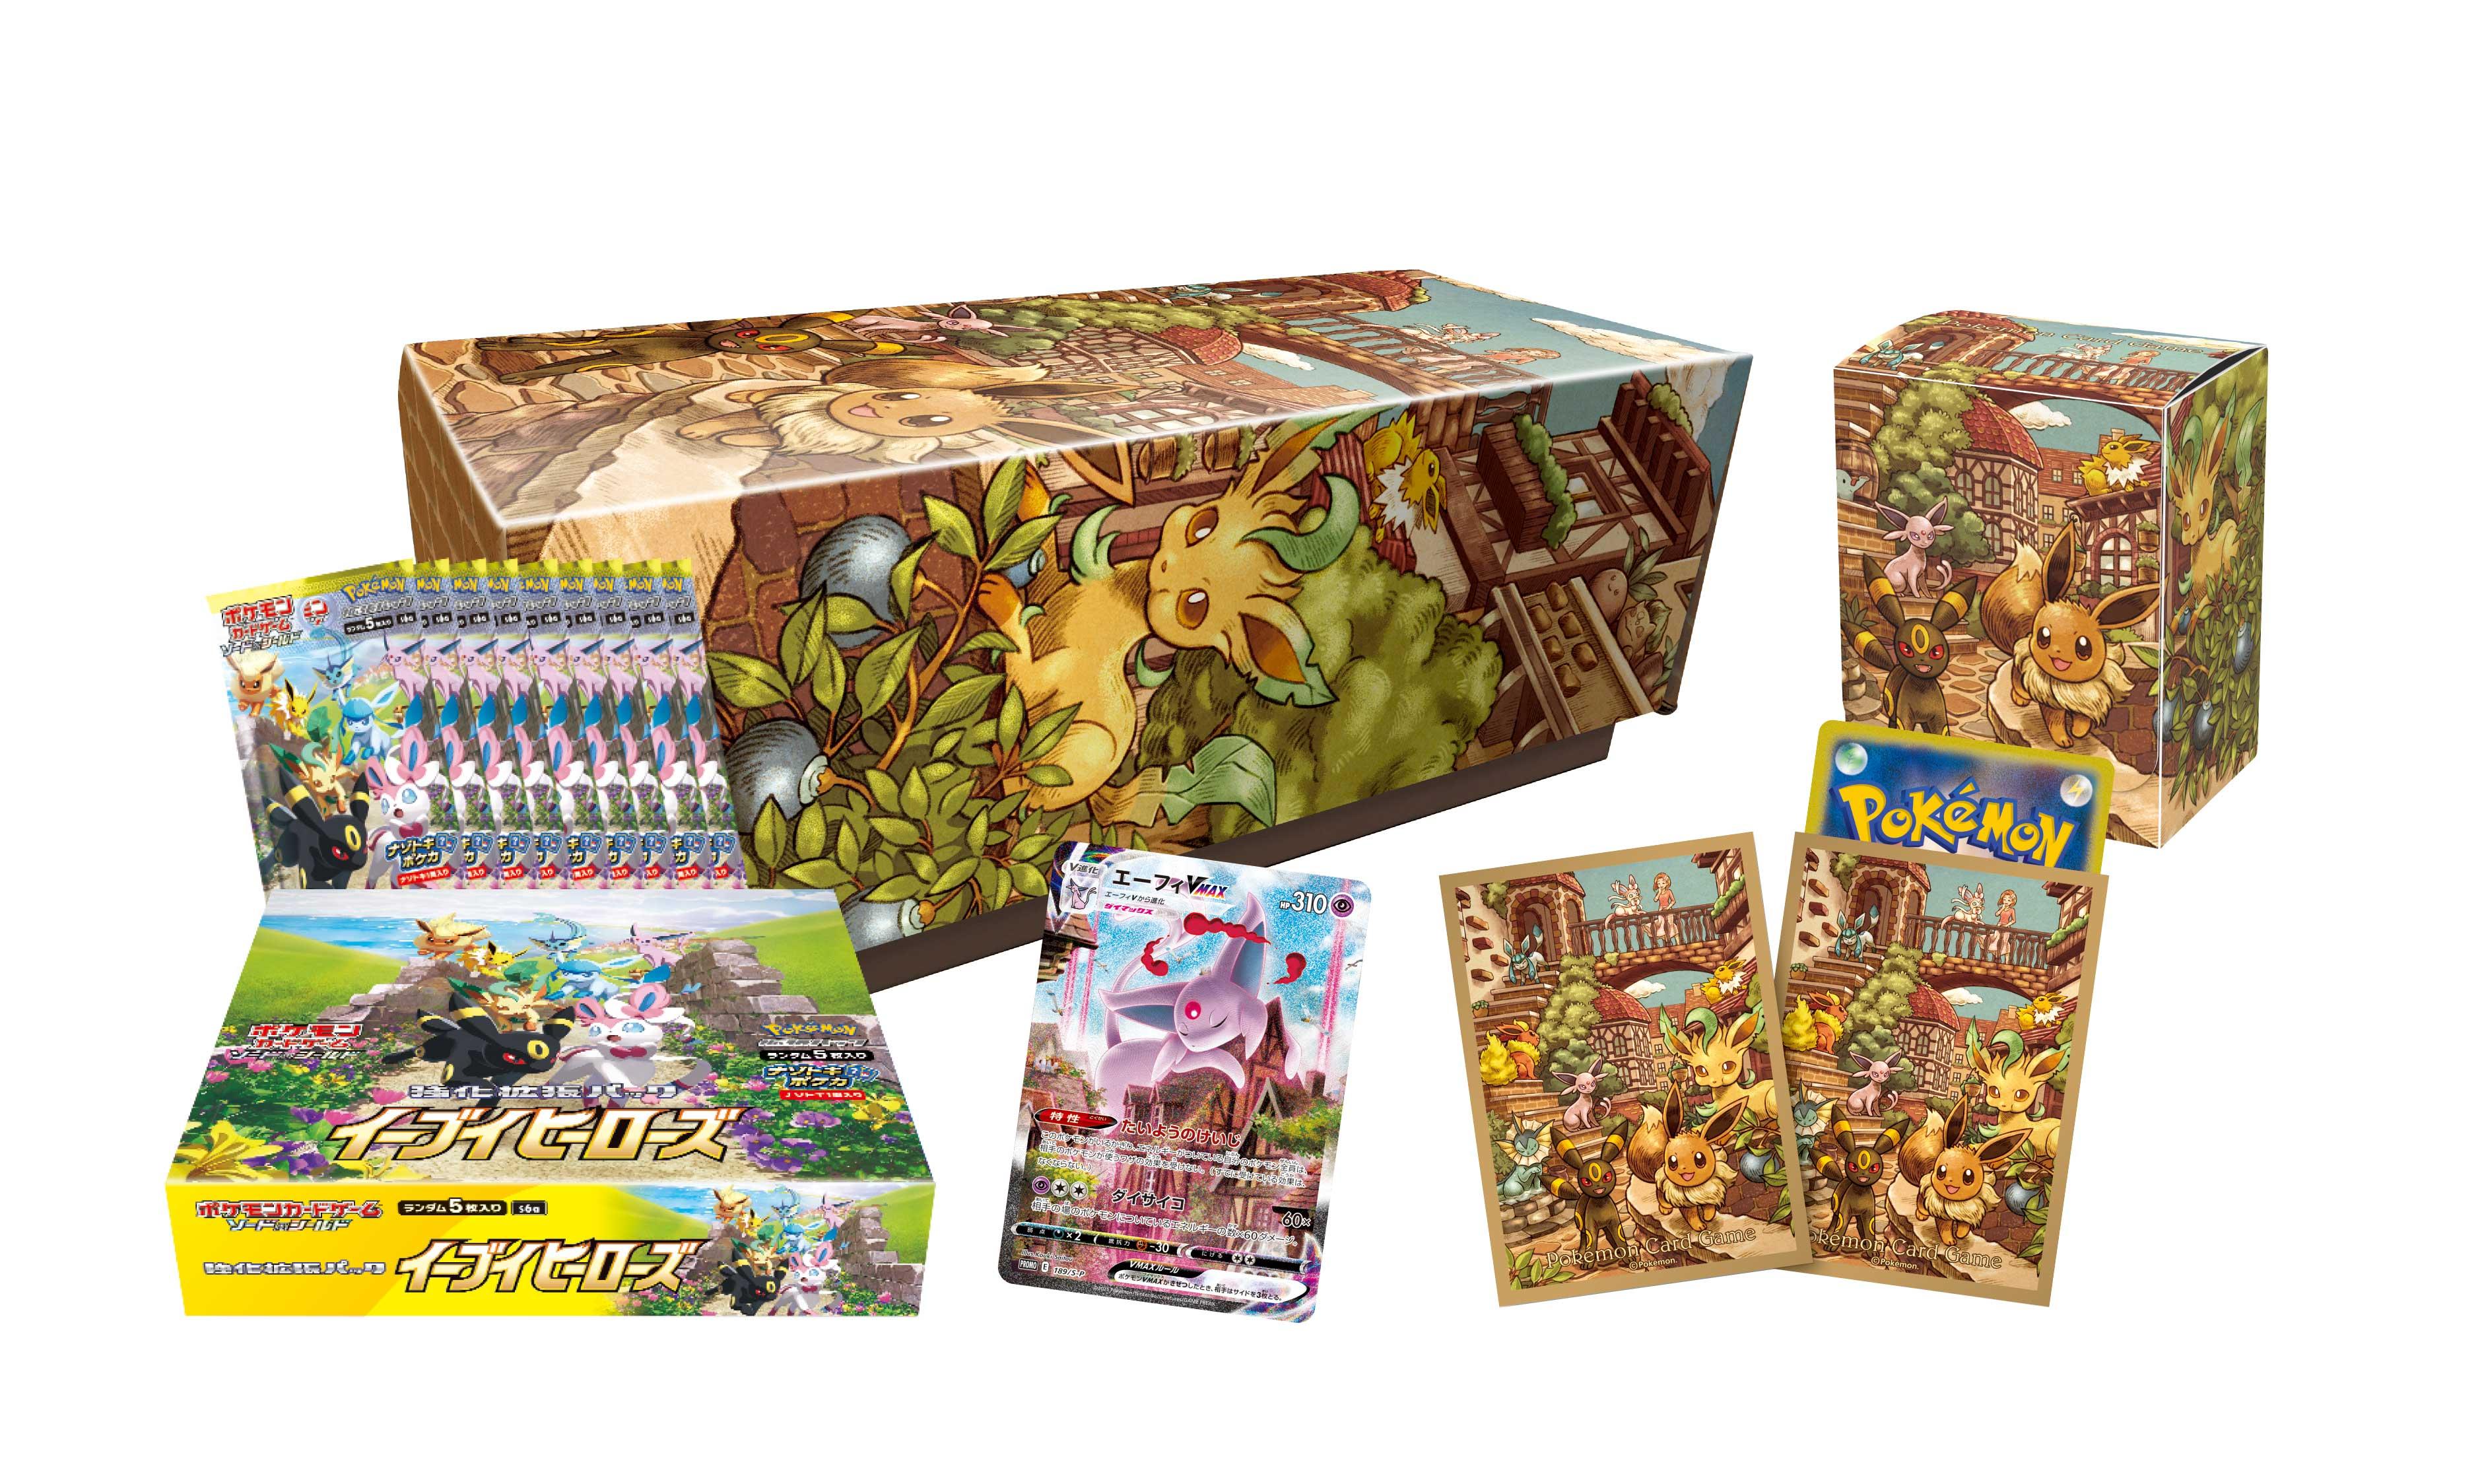 ポケモンカードゲーム 強化拡張パック イーブイヒーローズ BOX 3 Box 3lNAUWG48k, トレーディングカード - www